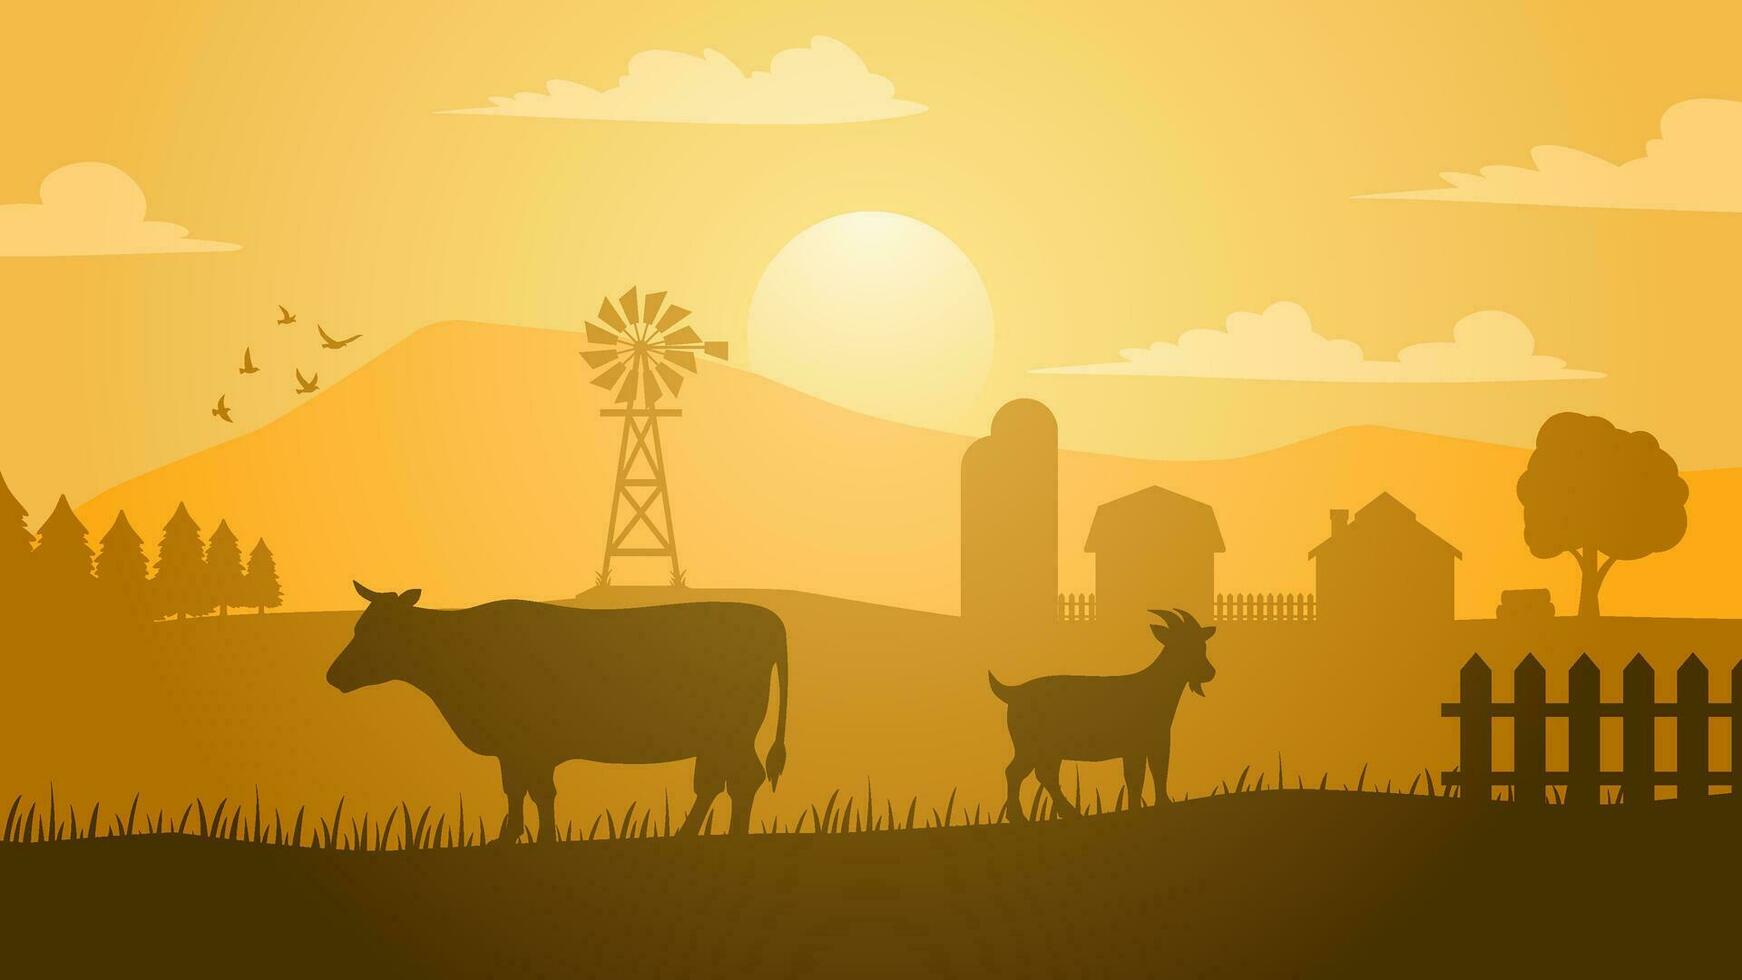 bouwland landschap vector illustratie. platteland silhouet met vee koe en geit. landelijk landbouw landschap voor illustratie, achtergrond of behang